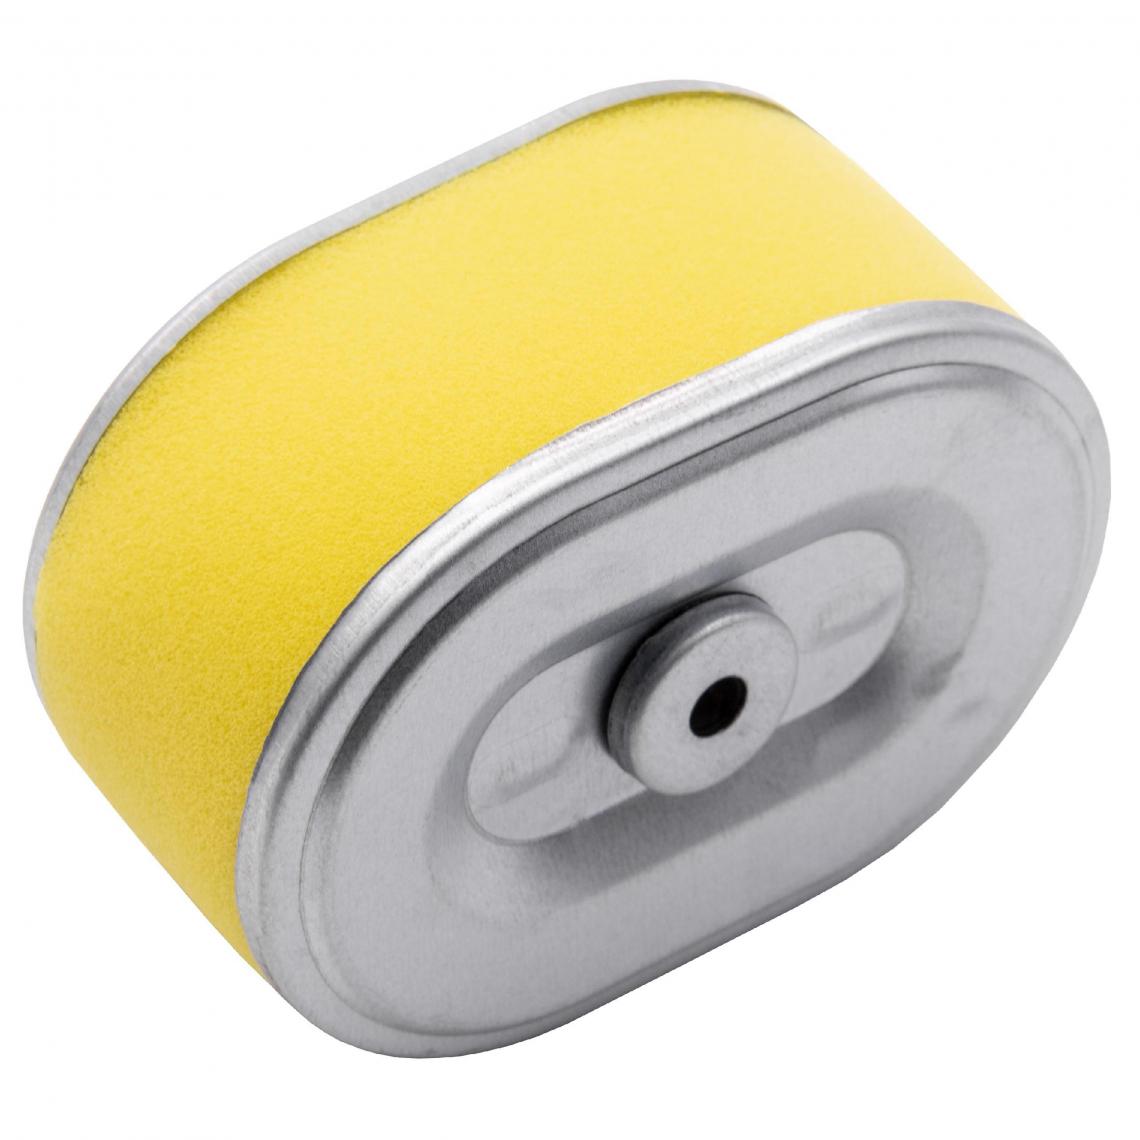 Vhbw - vhbw Filtre à air avec préfiltre de rechange jaune, argent remplace Oregon 30-318 compatible avec tondeuse à gazon; 10,1 x 7,2 x 5,1cm - Accessoires tondeuses